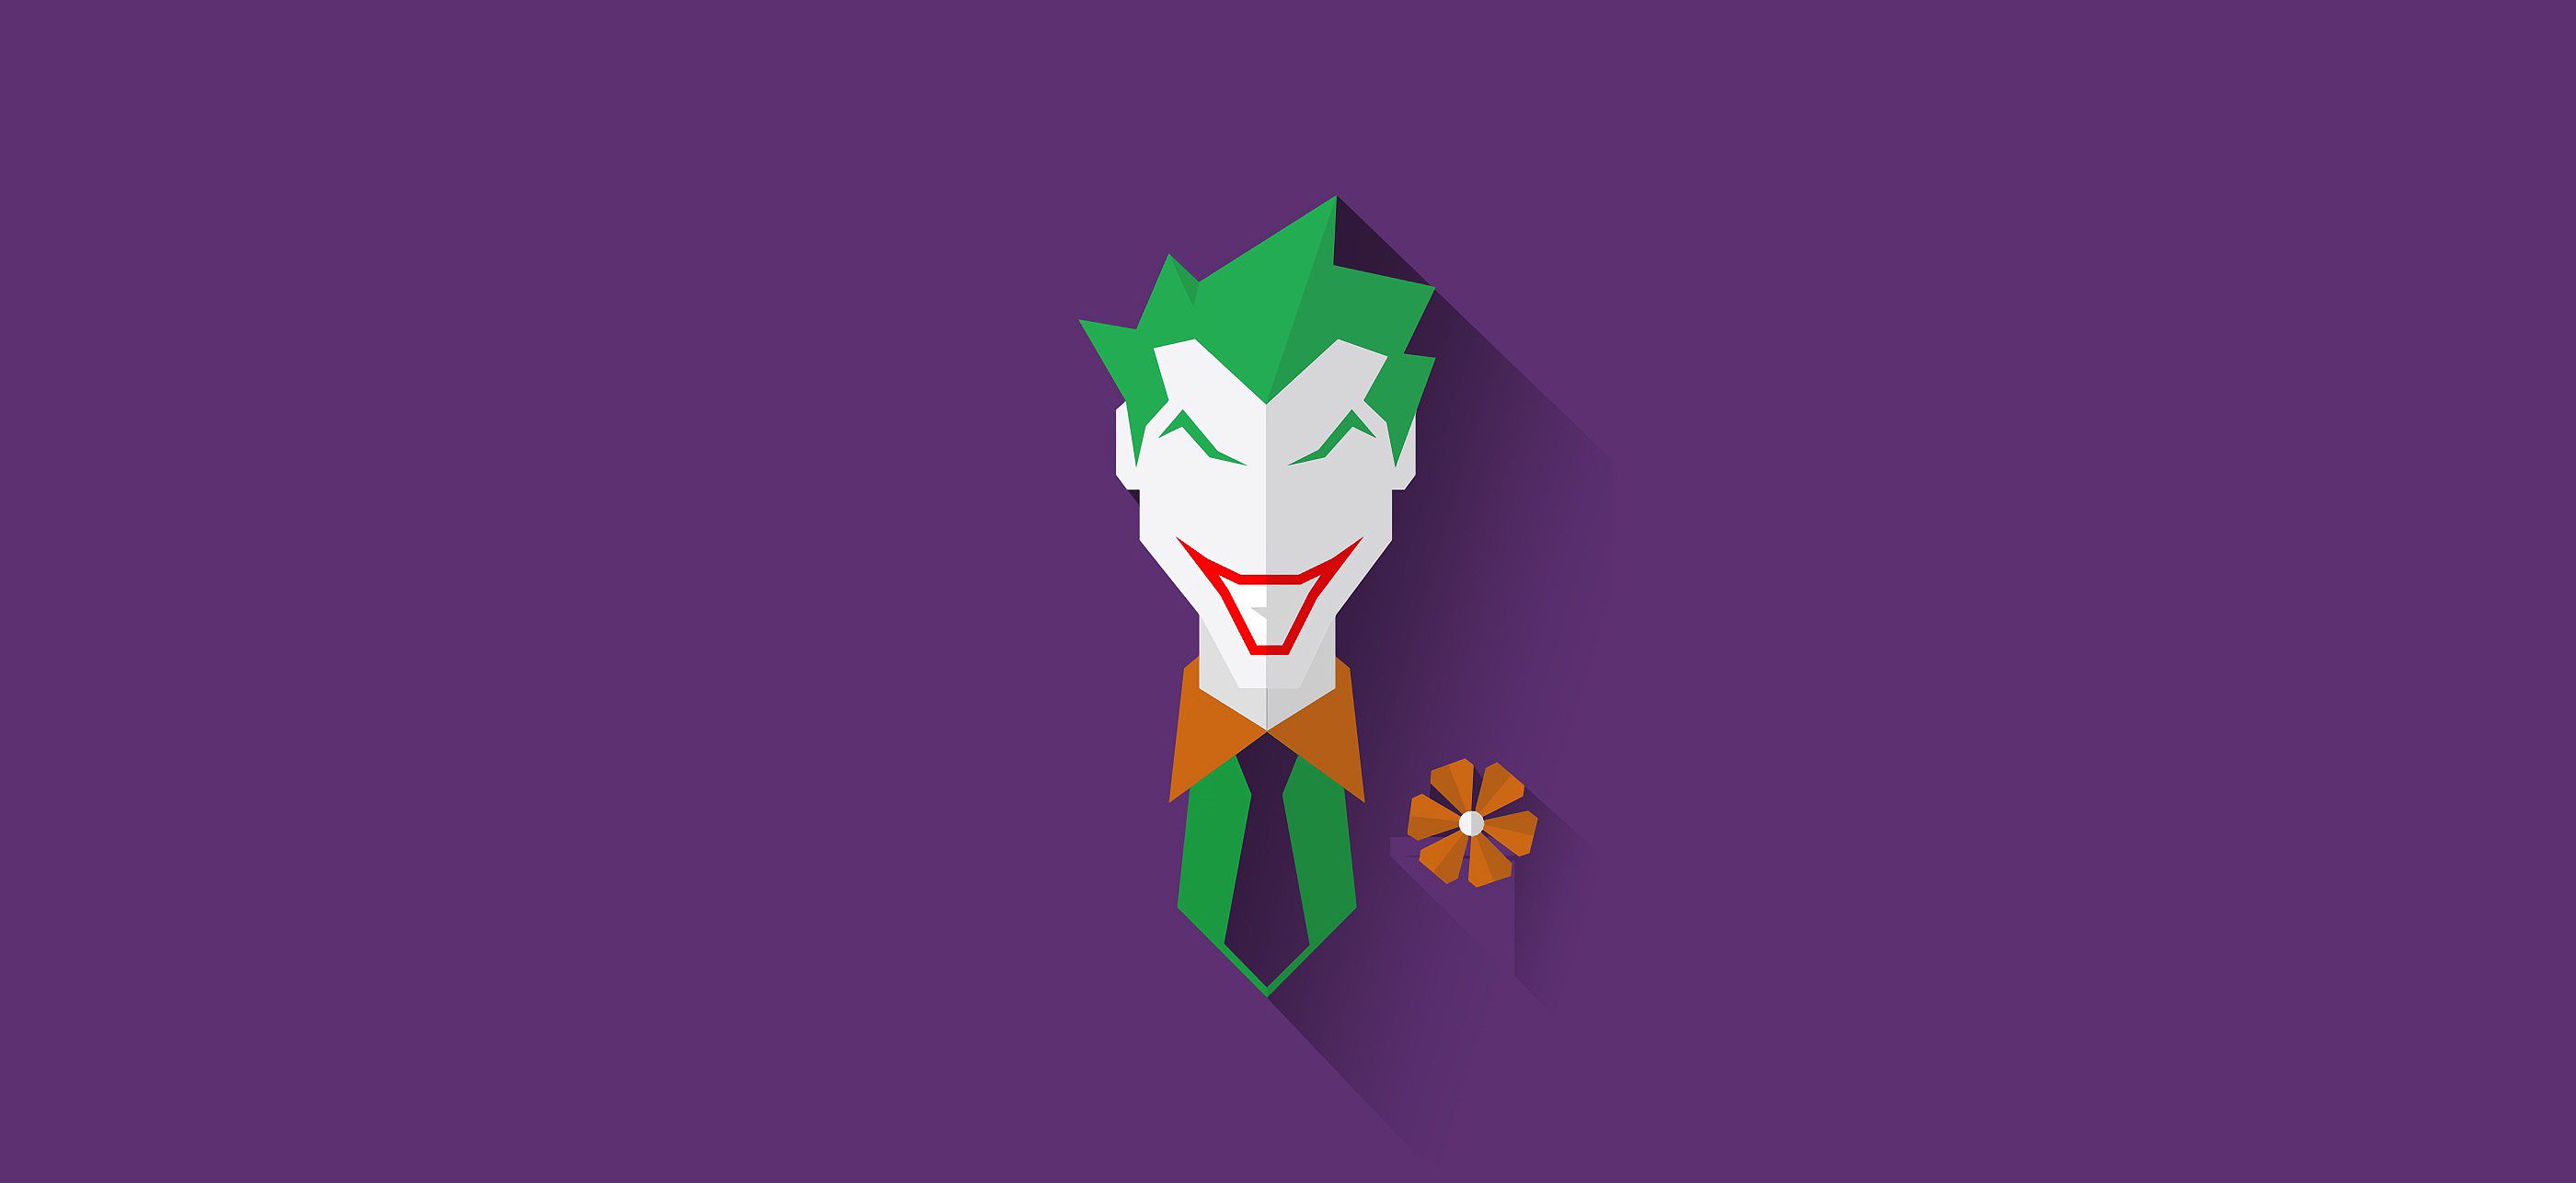 Joker Movie Minimalist Wallpapers